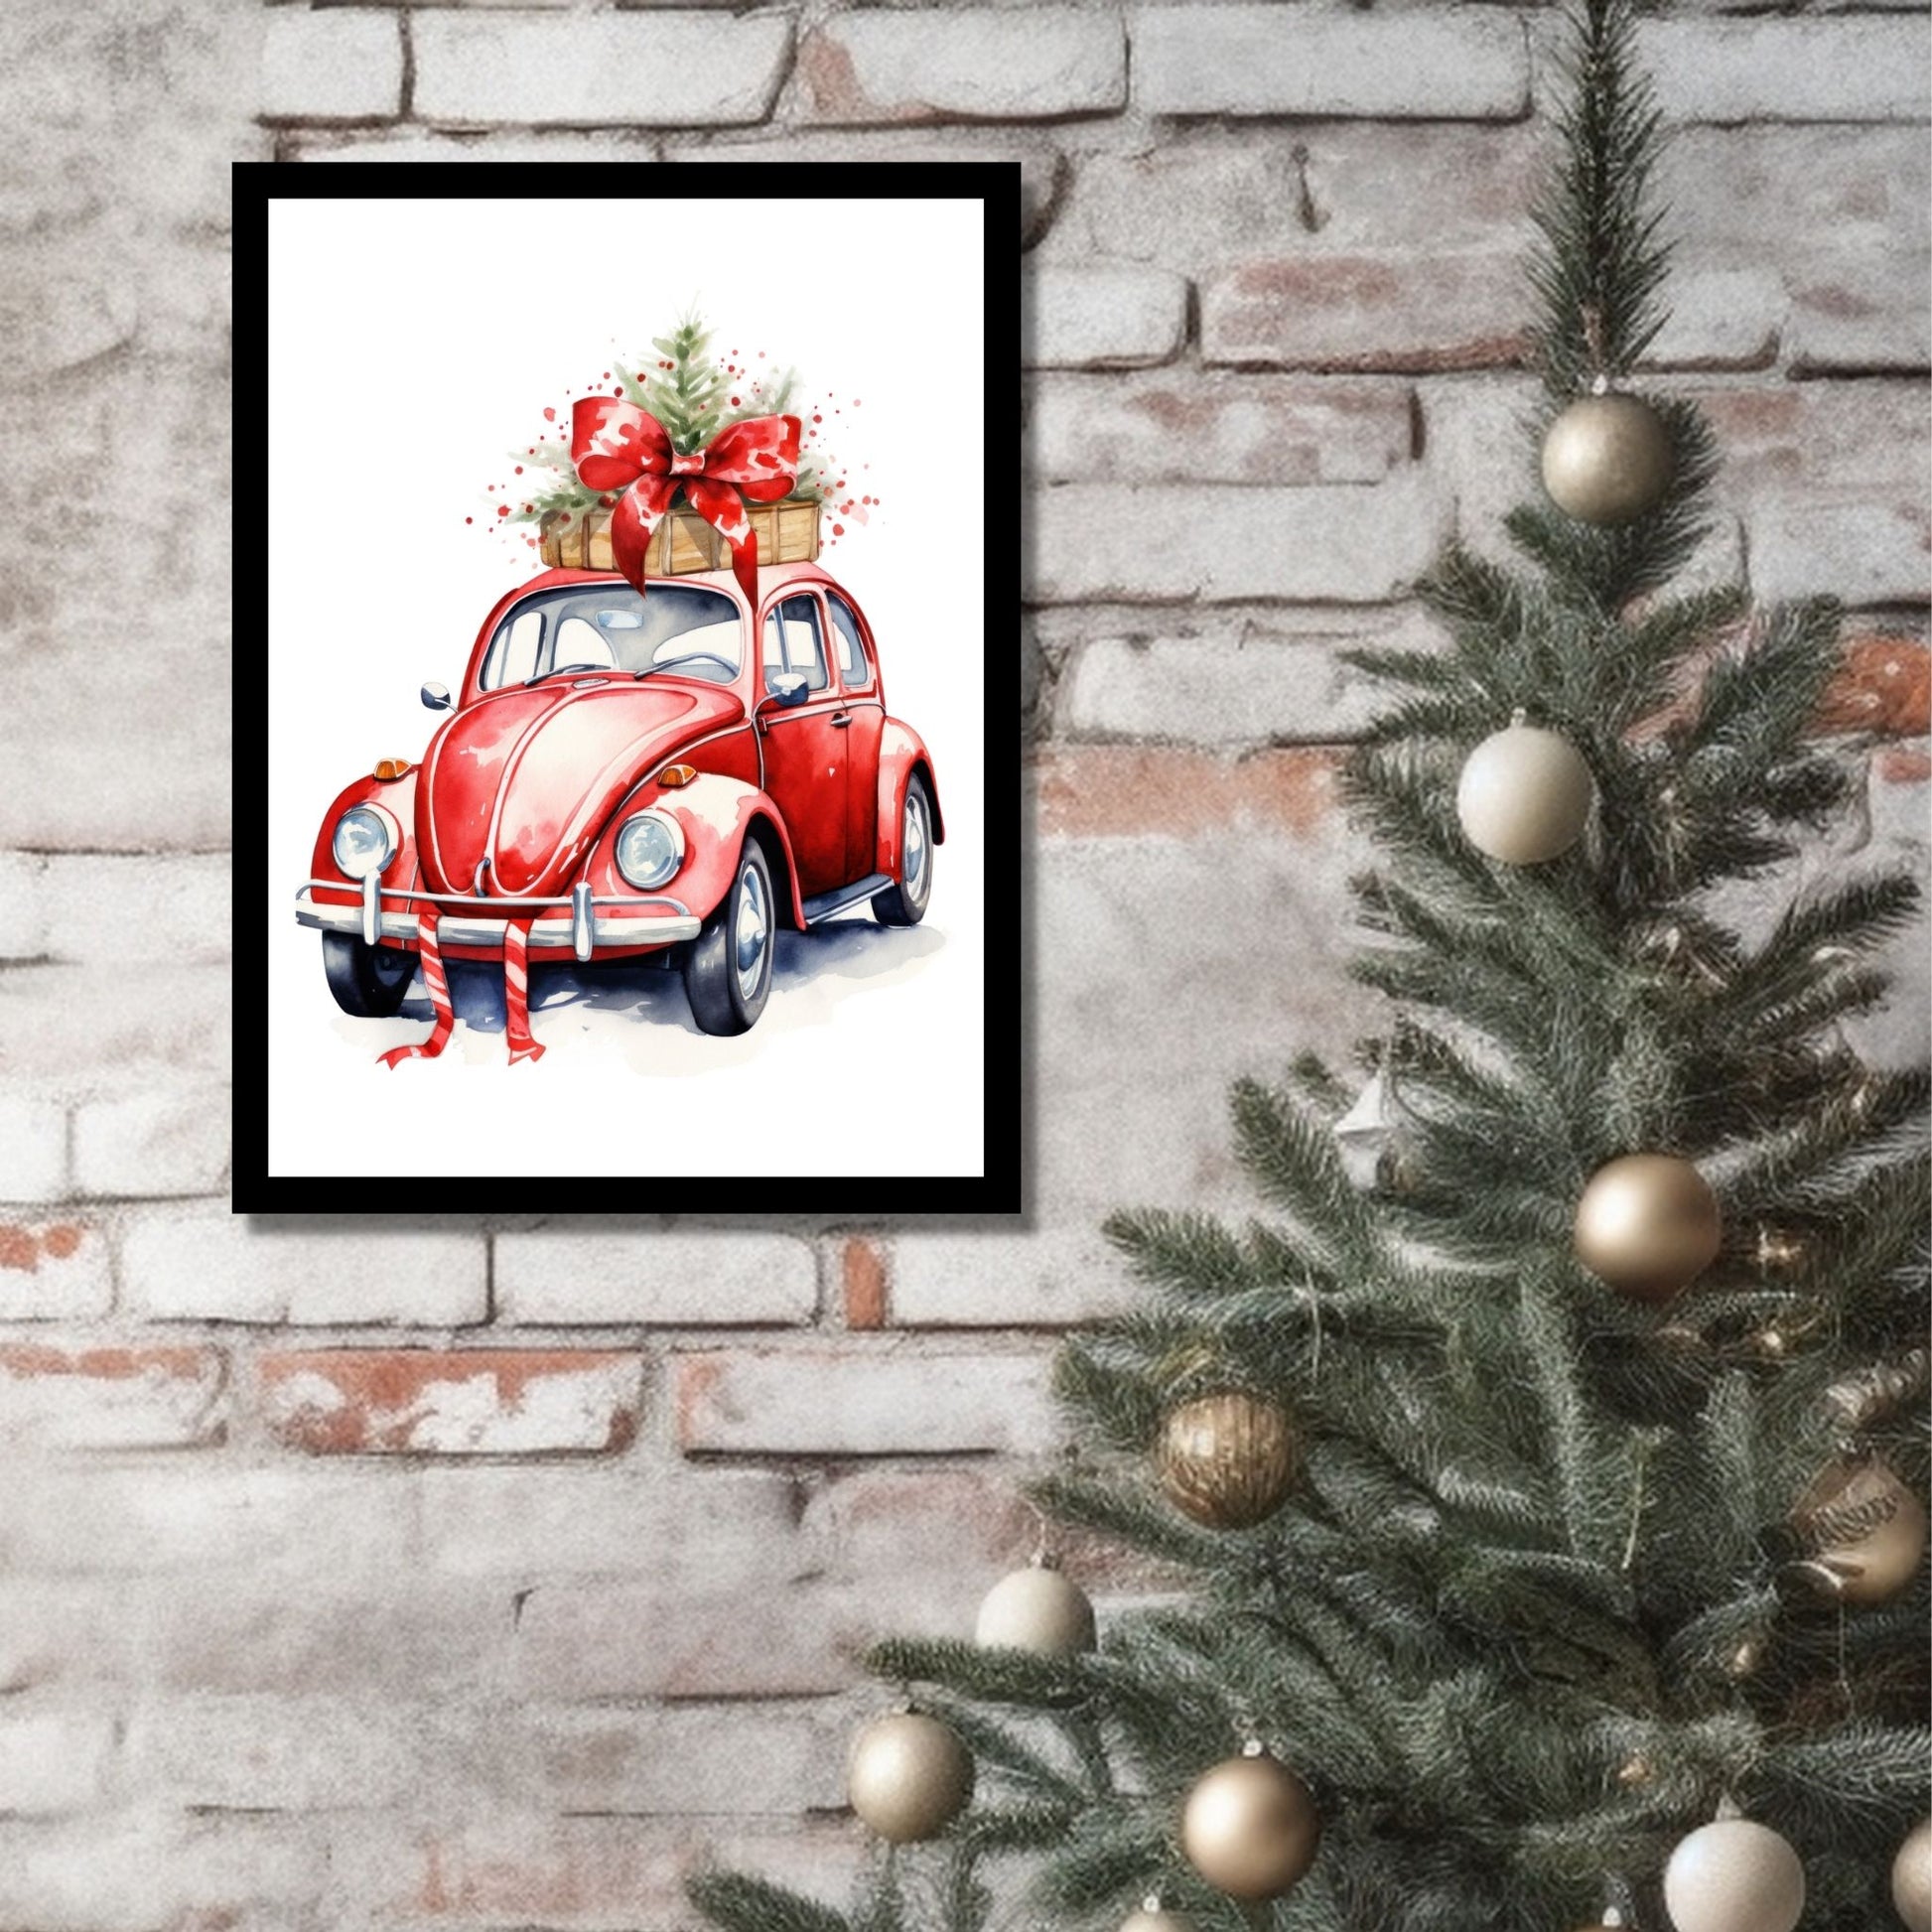 Plakat og lerret med grafisk julemotiv av gammel, rød volkswagen boble. På taket er den lastet med juledekorasjoner. På bildet henger motivet som plakaten i en sort ramme på en murvegg ved siden av et juletre.